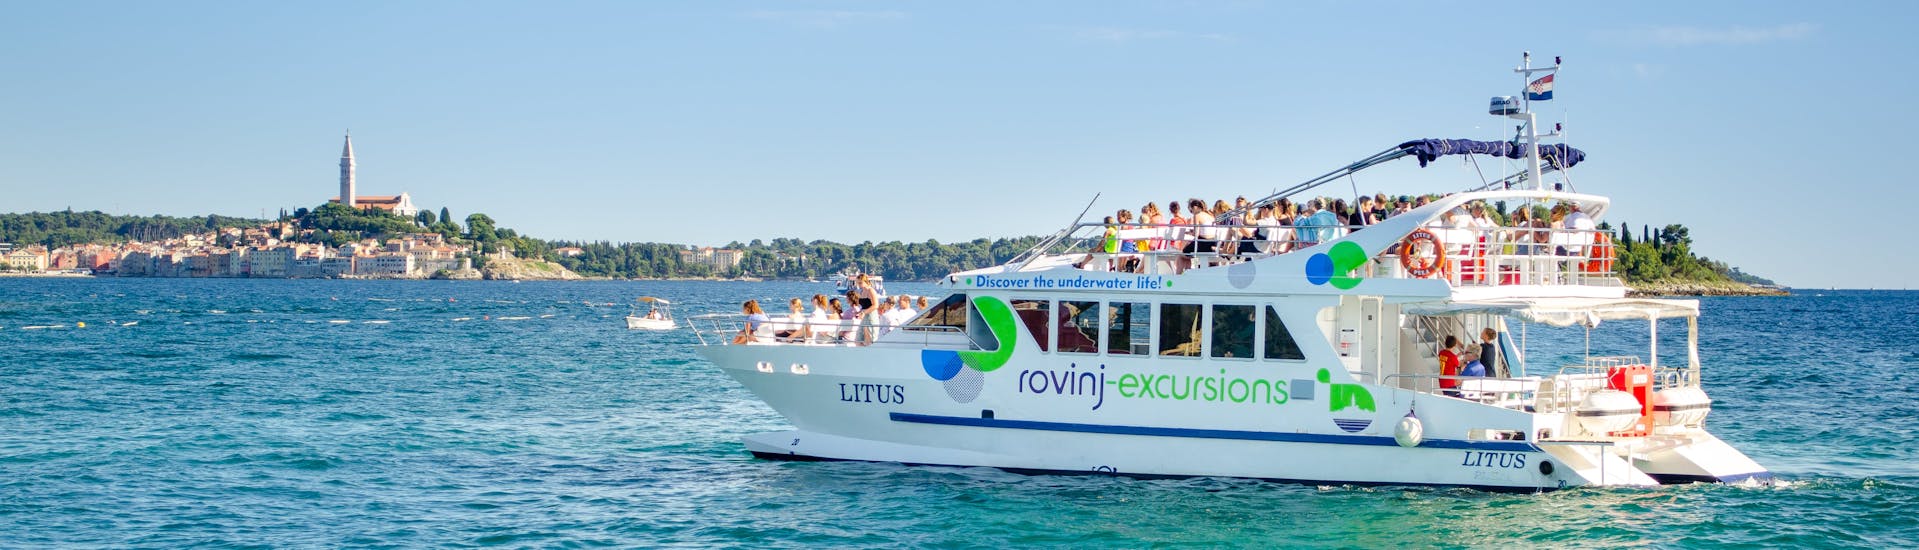 Il catamano LITUS solca le acque cristalline dell'Istria durante la Gita in catamarano a Orsera e al canale di Leme da Rovigno con Rovinj Excursions.